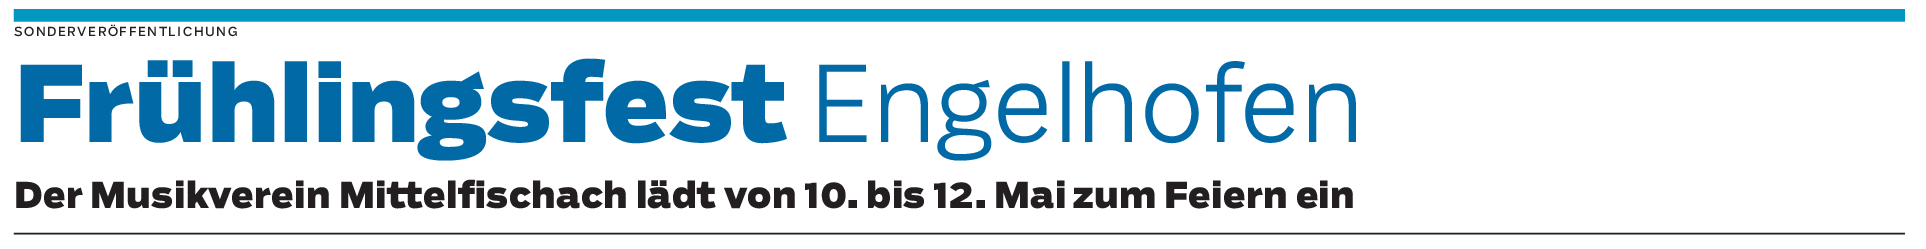 Frühlingsfest Engelhofen vom 10. bis 12. Mai: Drei Tage Partystimmung